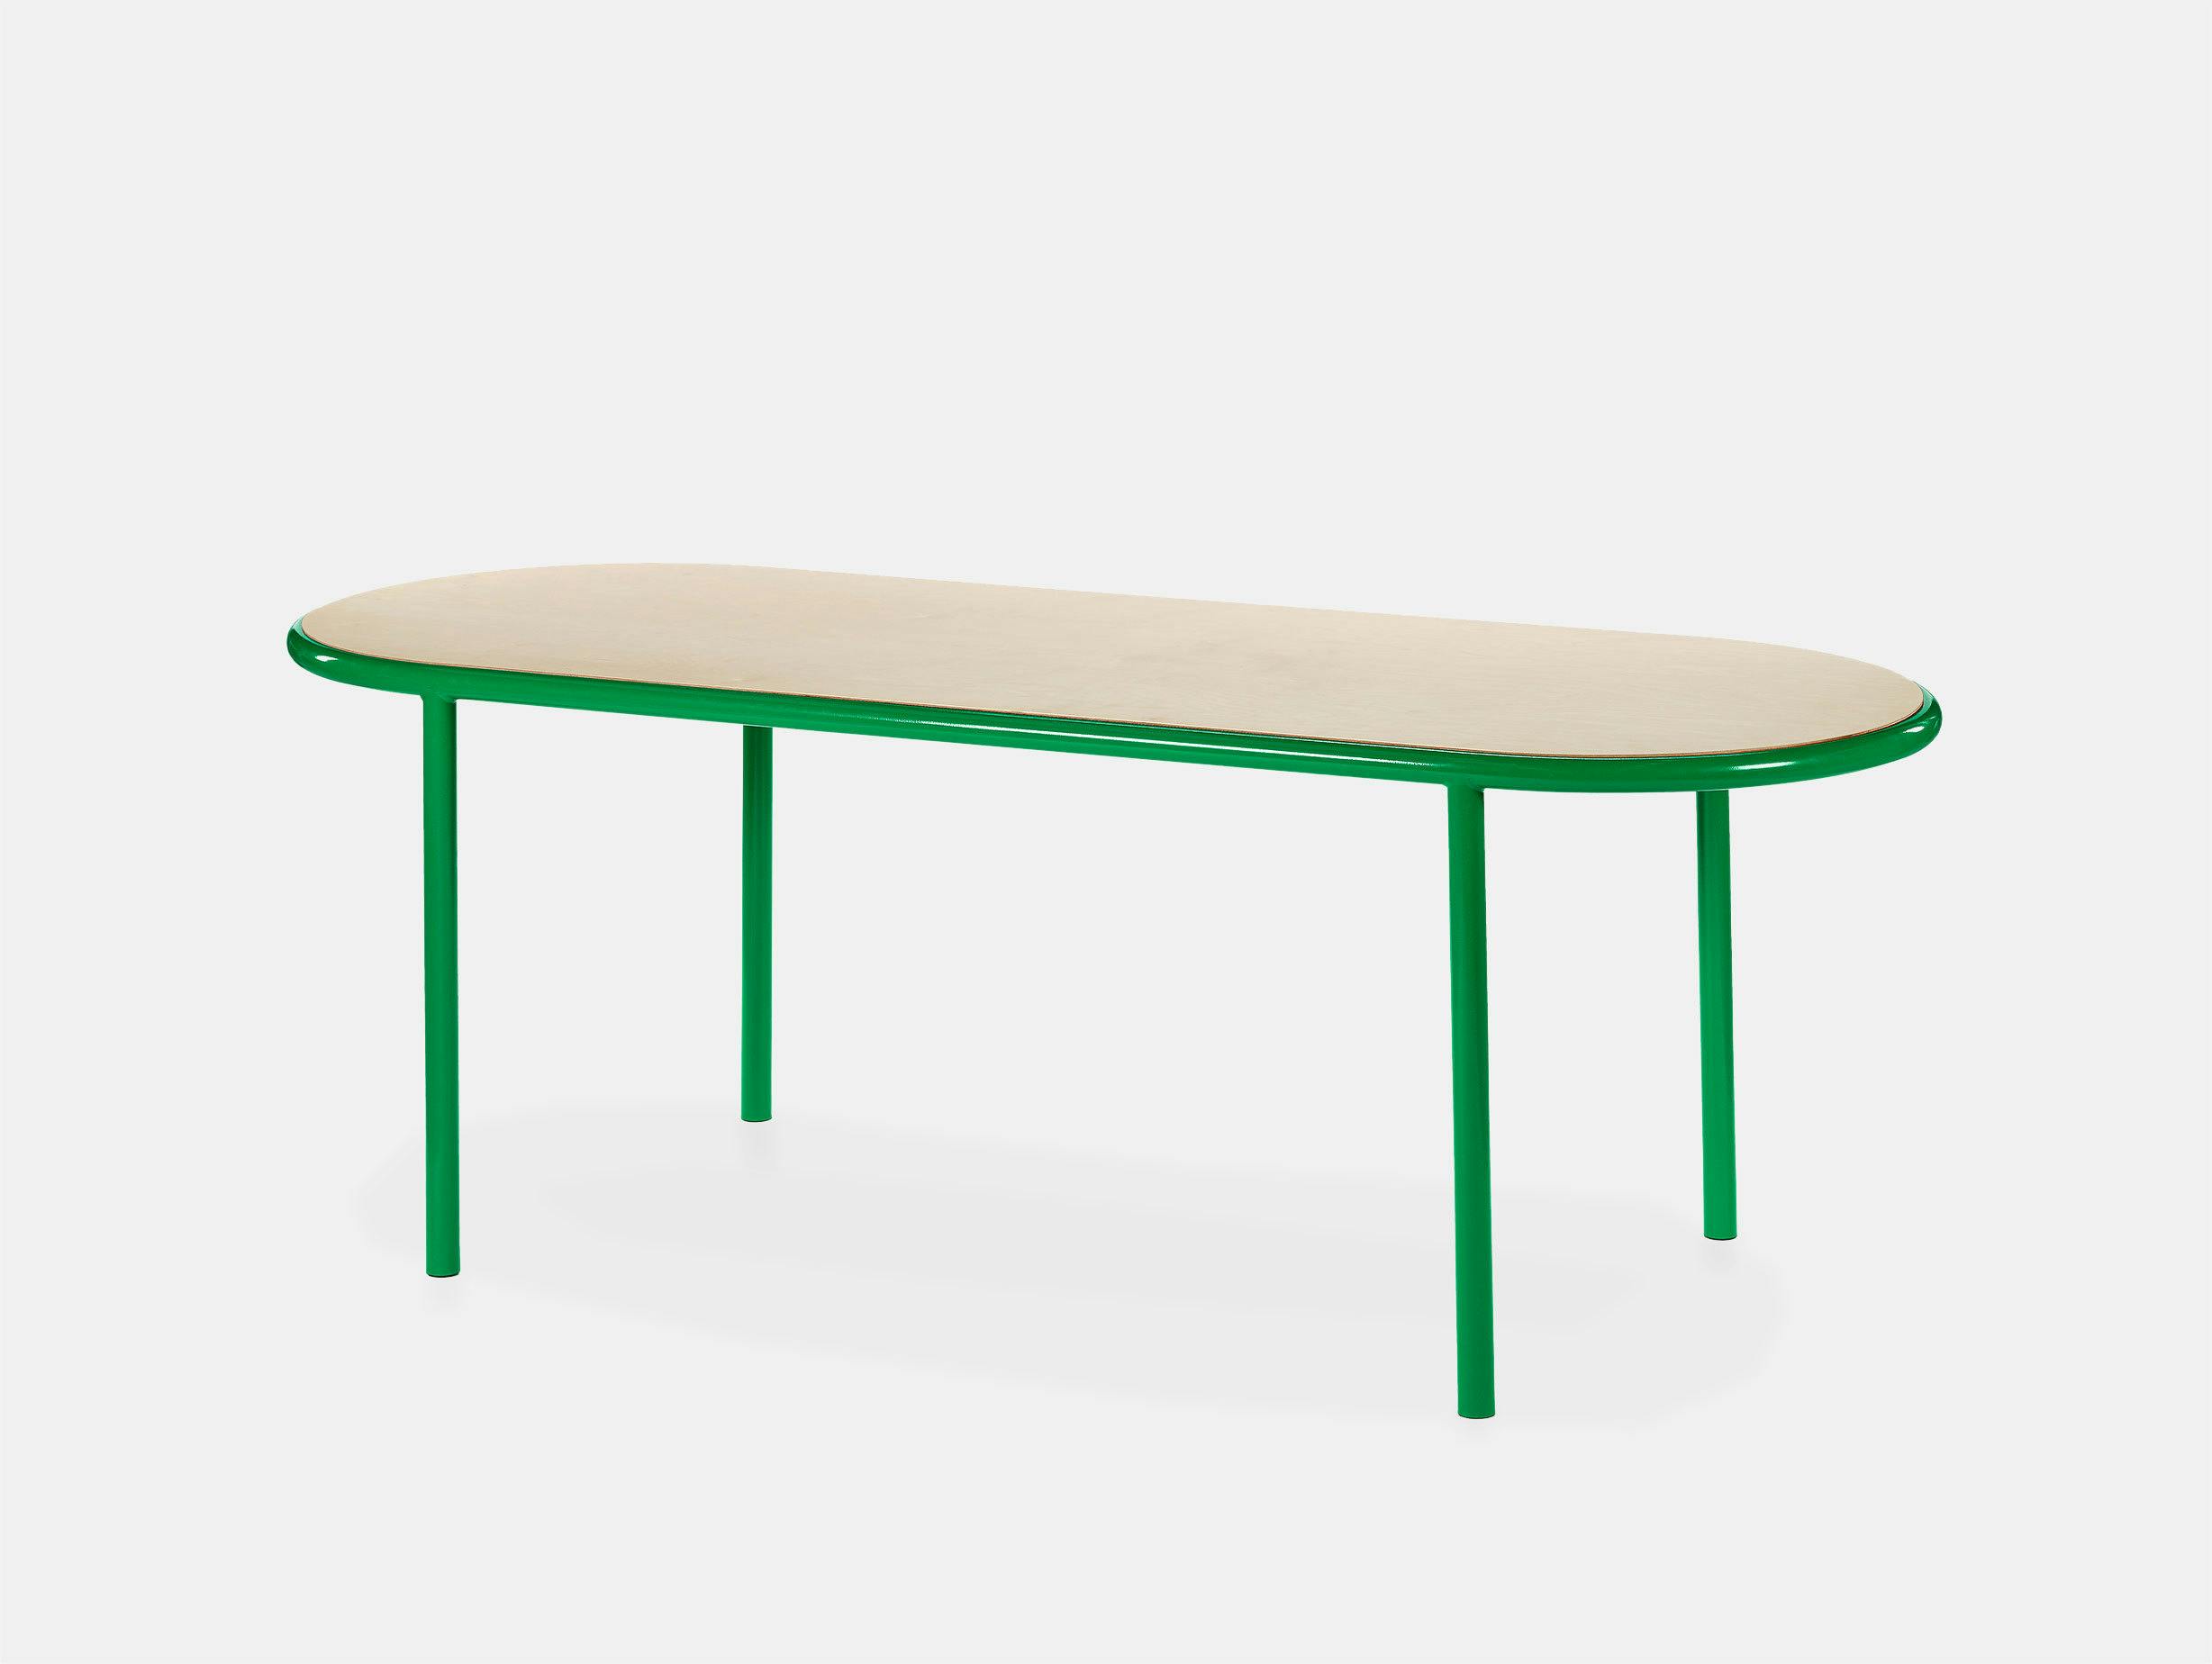 Muller van severen wooden table oval green birch